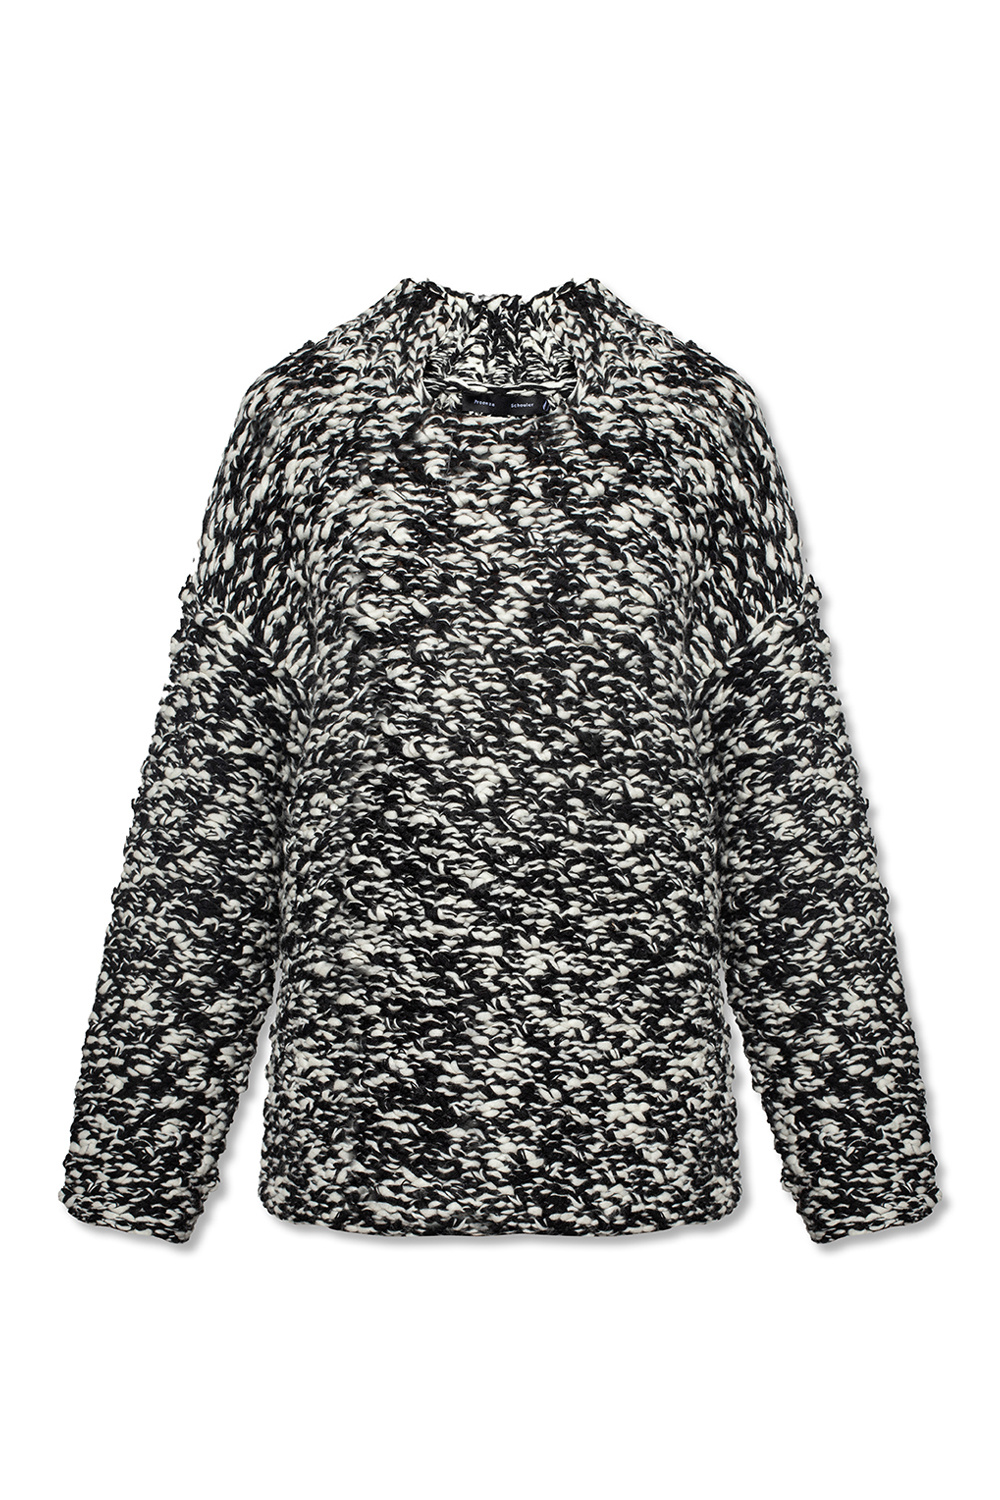 proenza alto Schouler Cut-out sweater